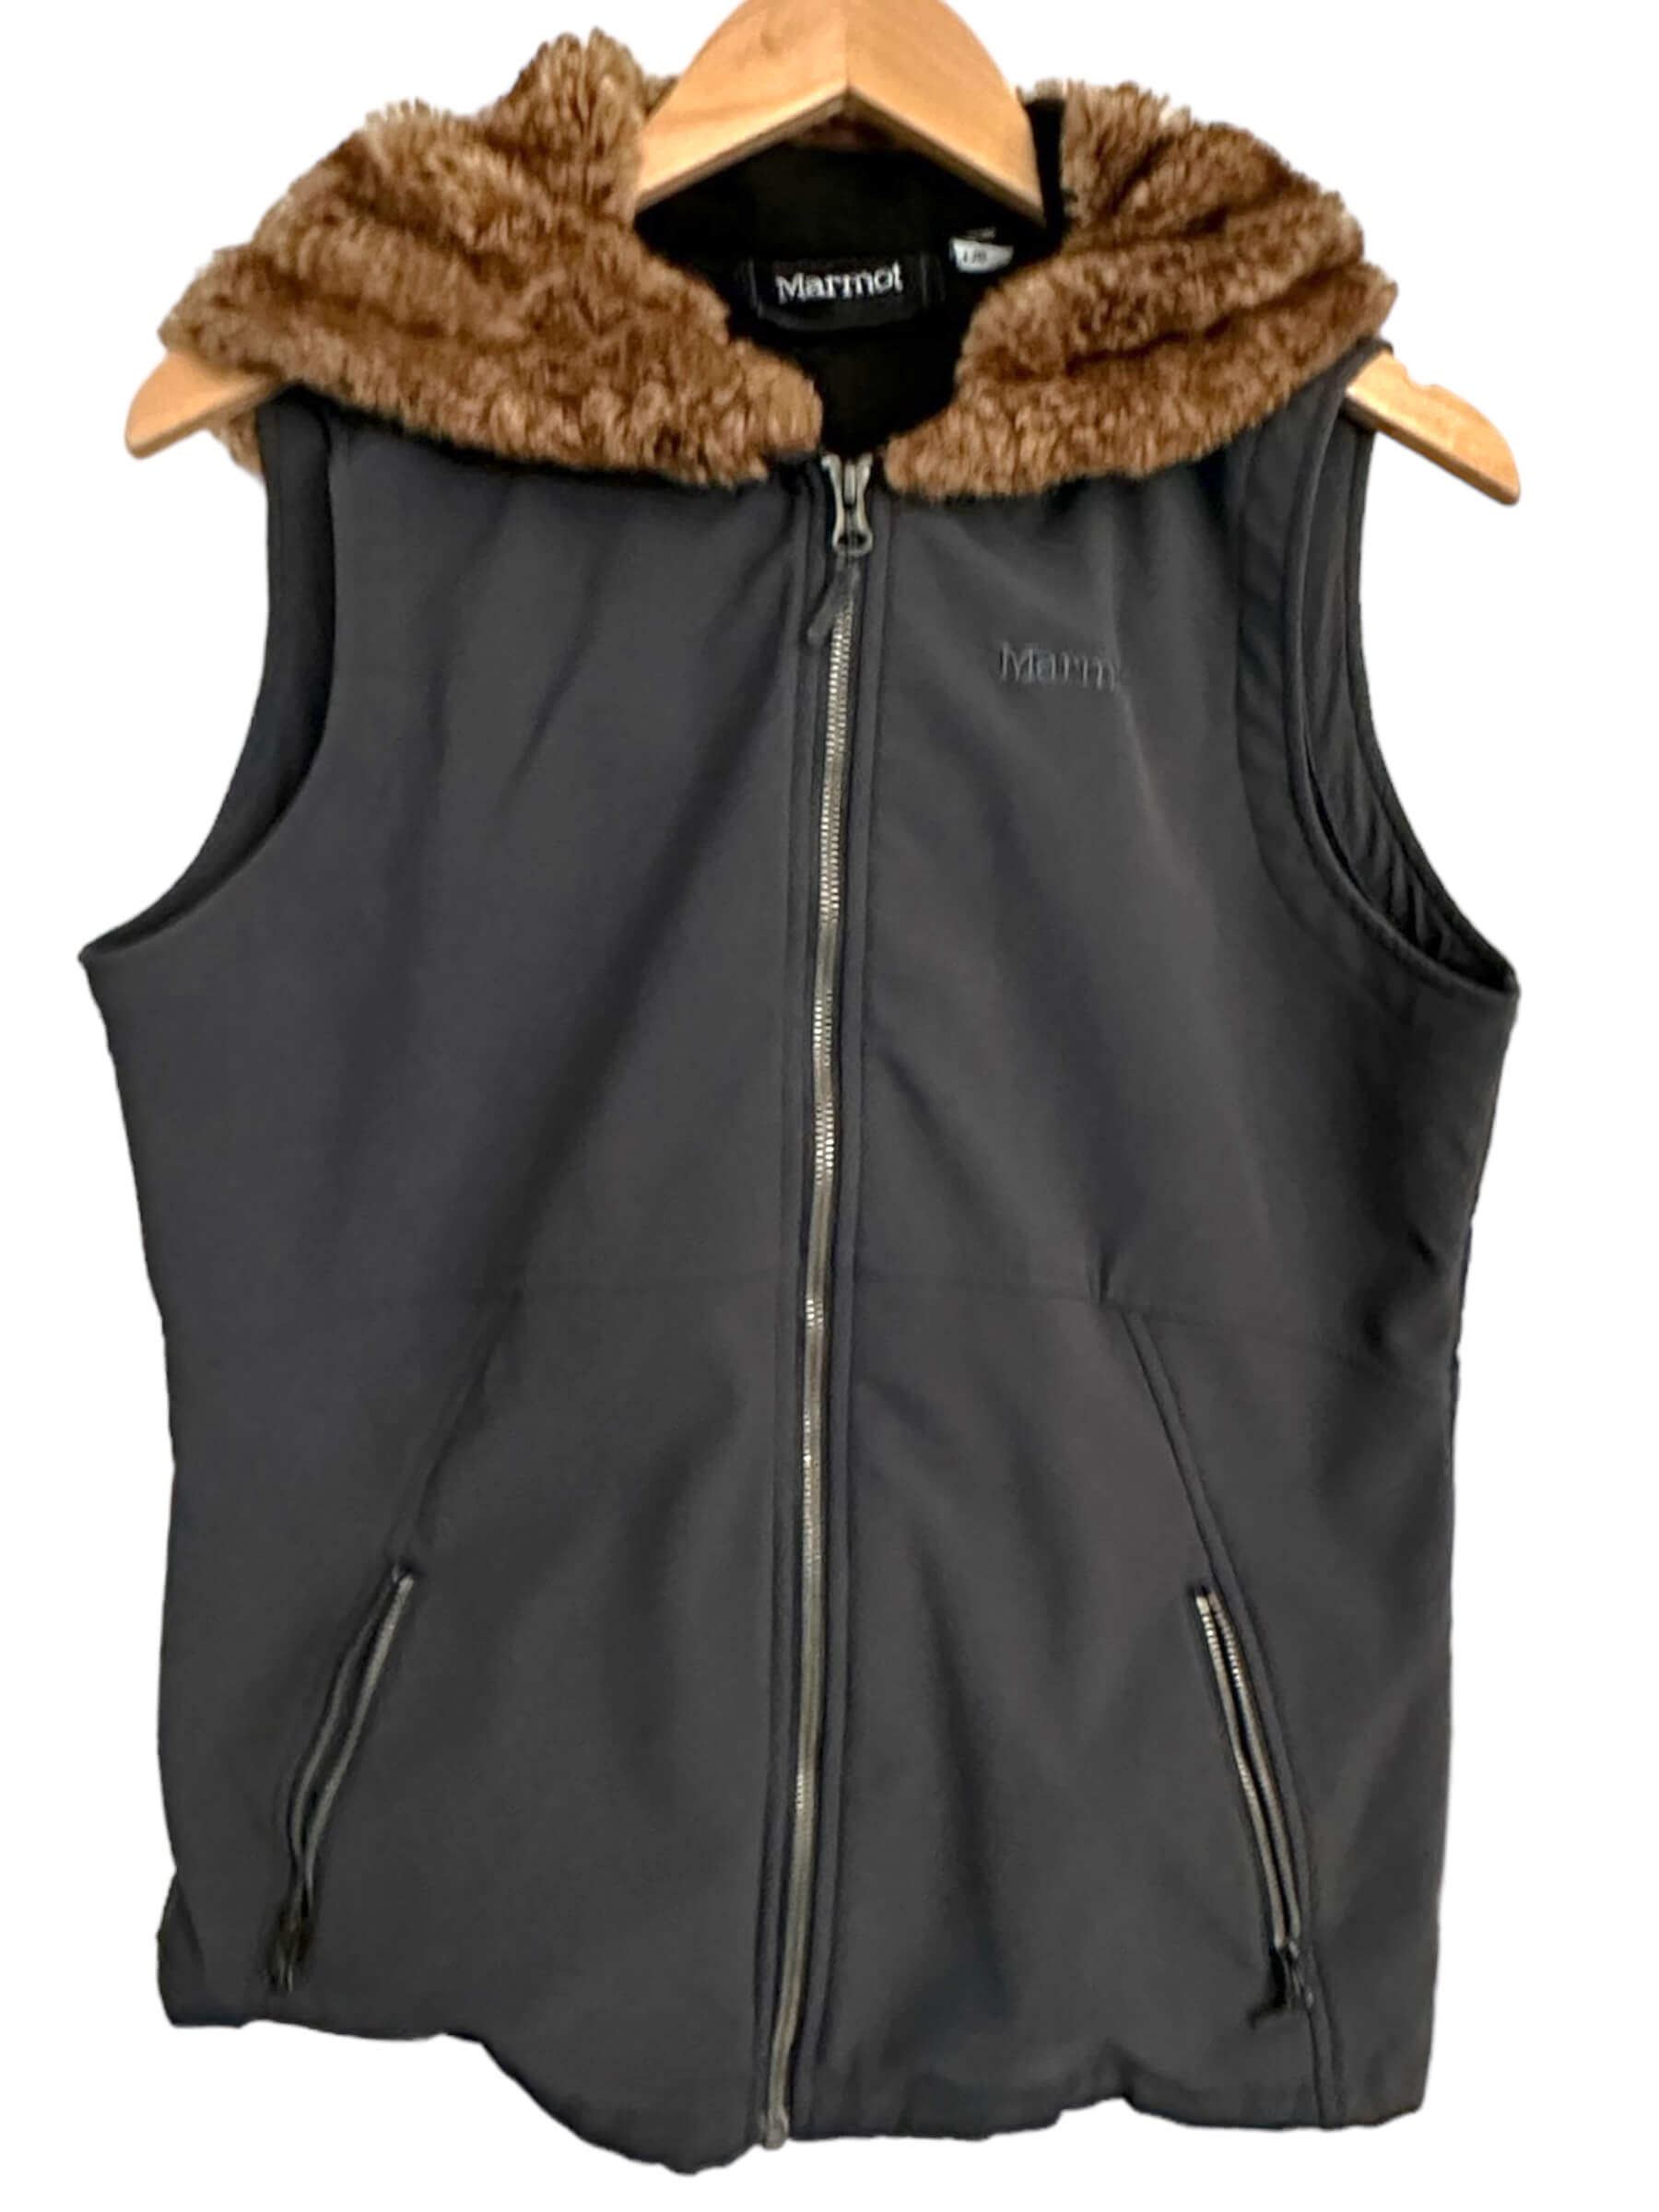 Soft Autumn MARMOT faux fur hooded jacket vest